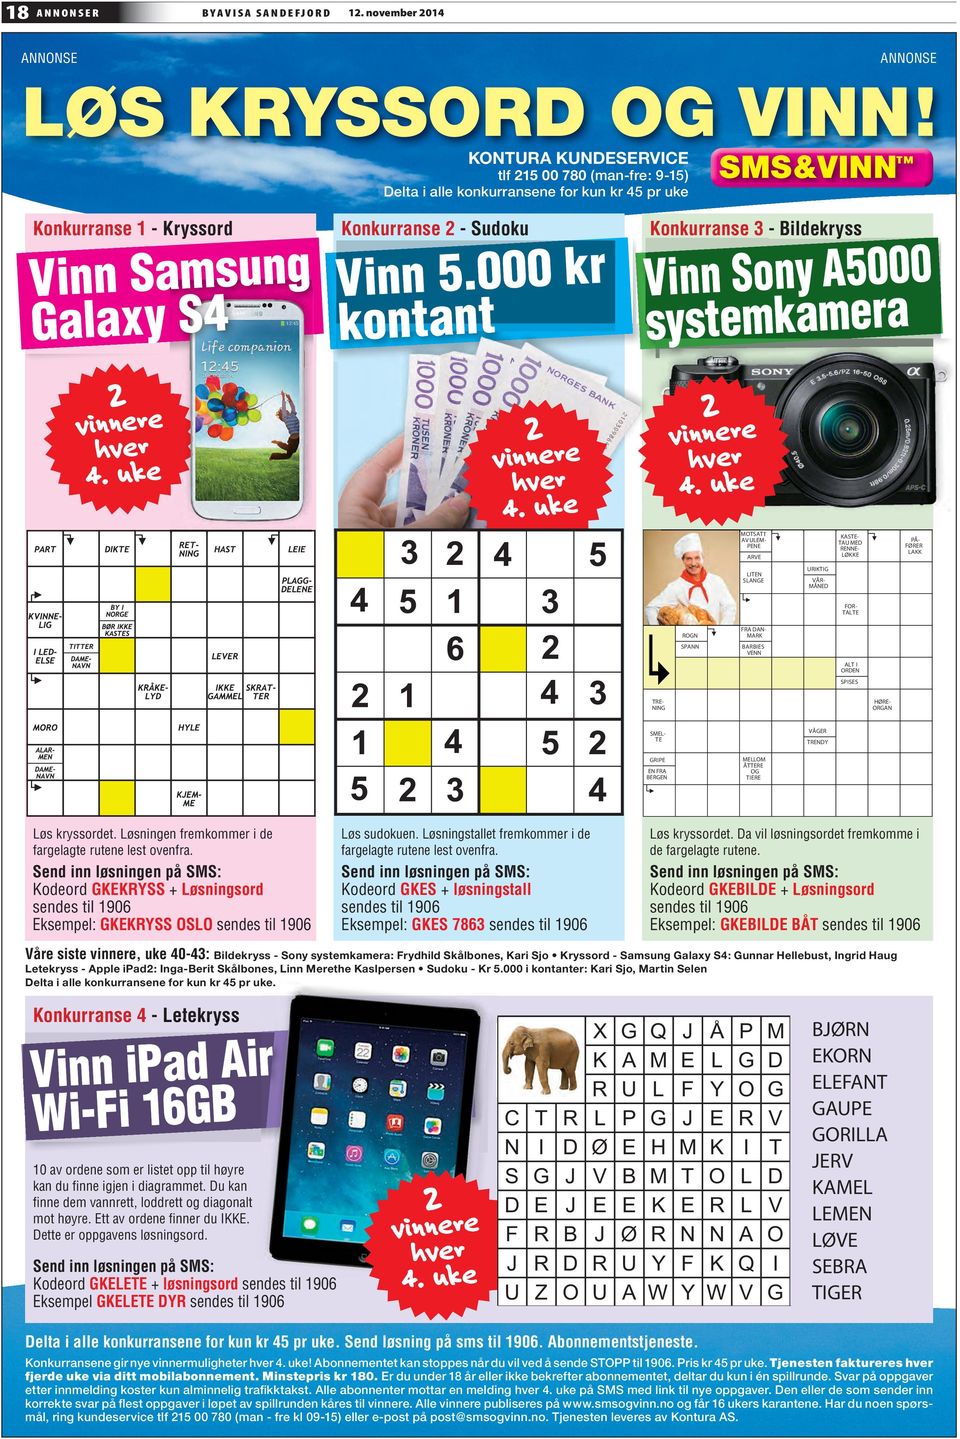 000 kr kontant Konkurranse 3 - Bildekryss Vinn Sony A5000 systemkamera 2 vinnere hver 4. uke 2 vinnere hver 4.